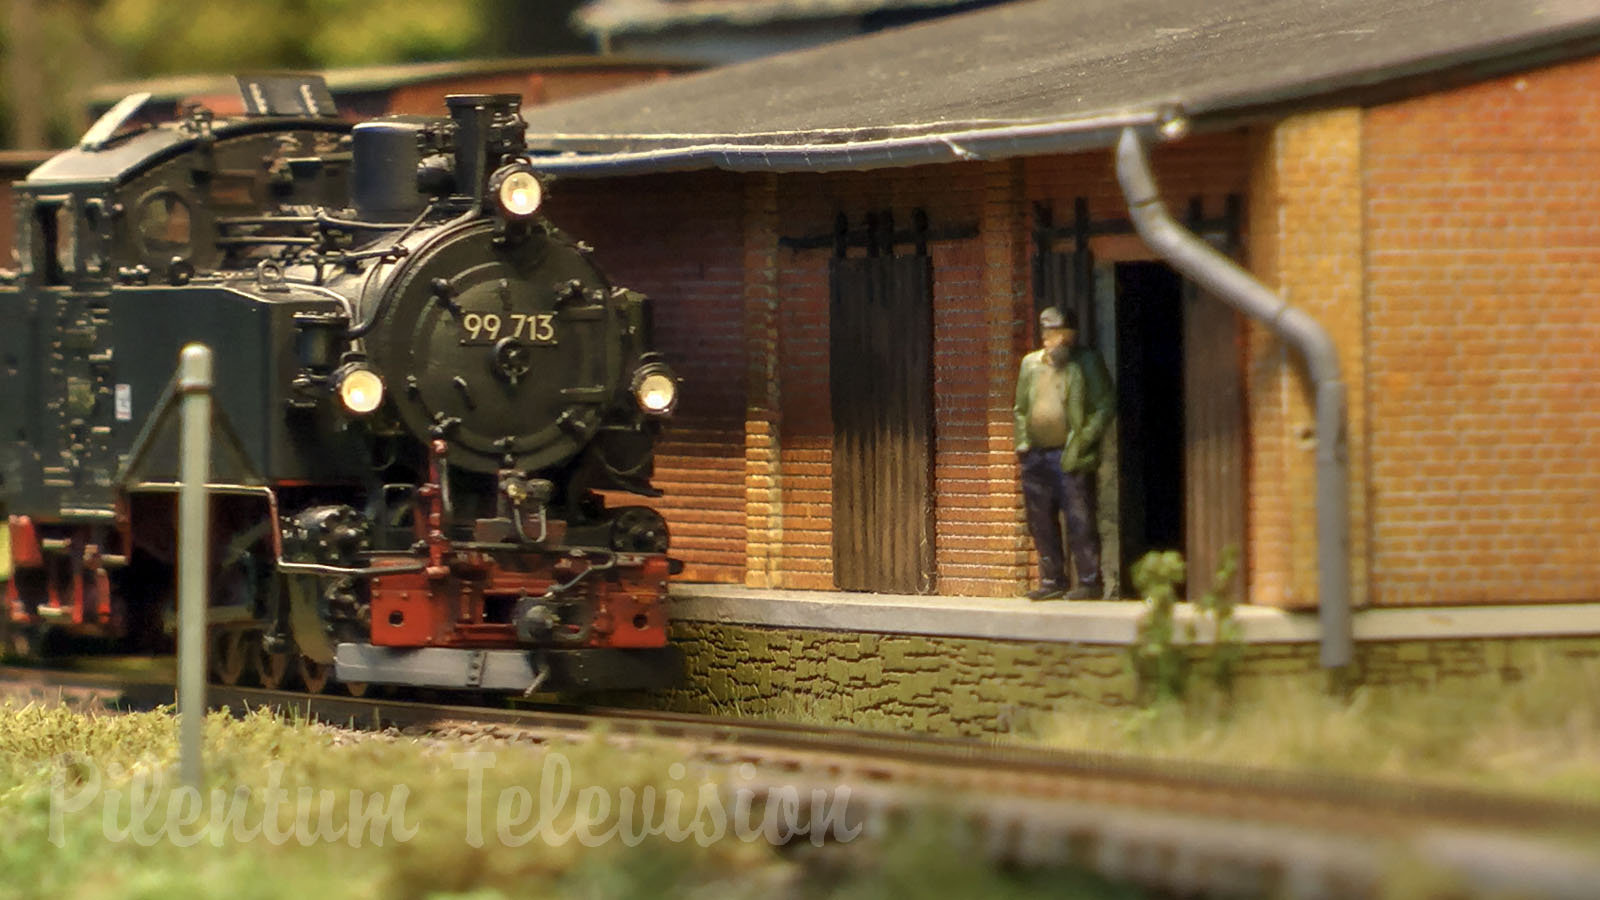 Magnifique maquette de train à vapeur des chemins de fer saxons à voie étroite